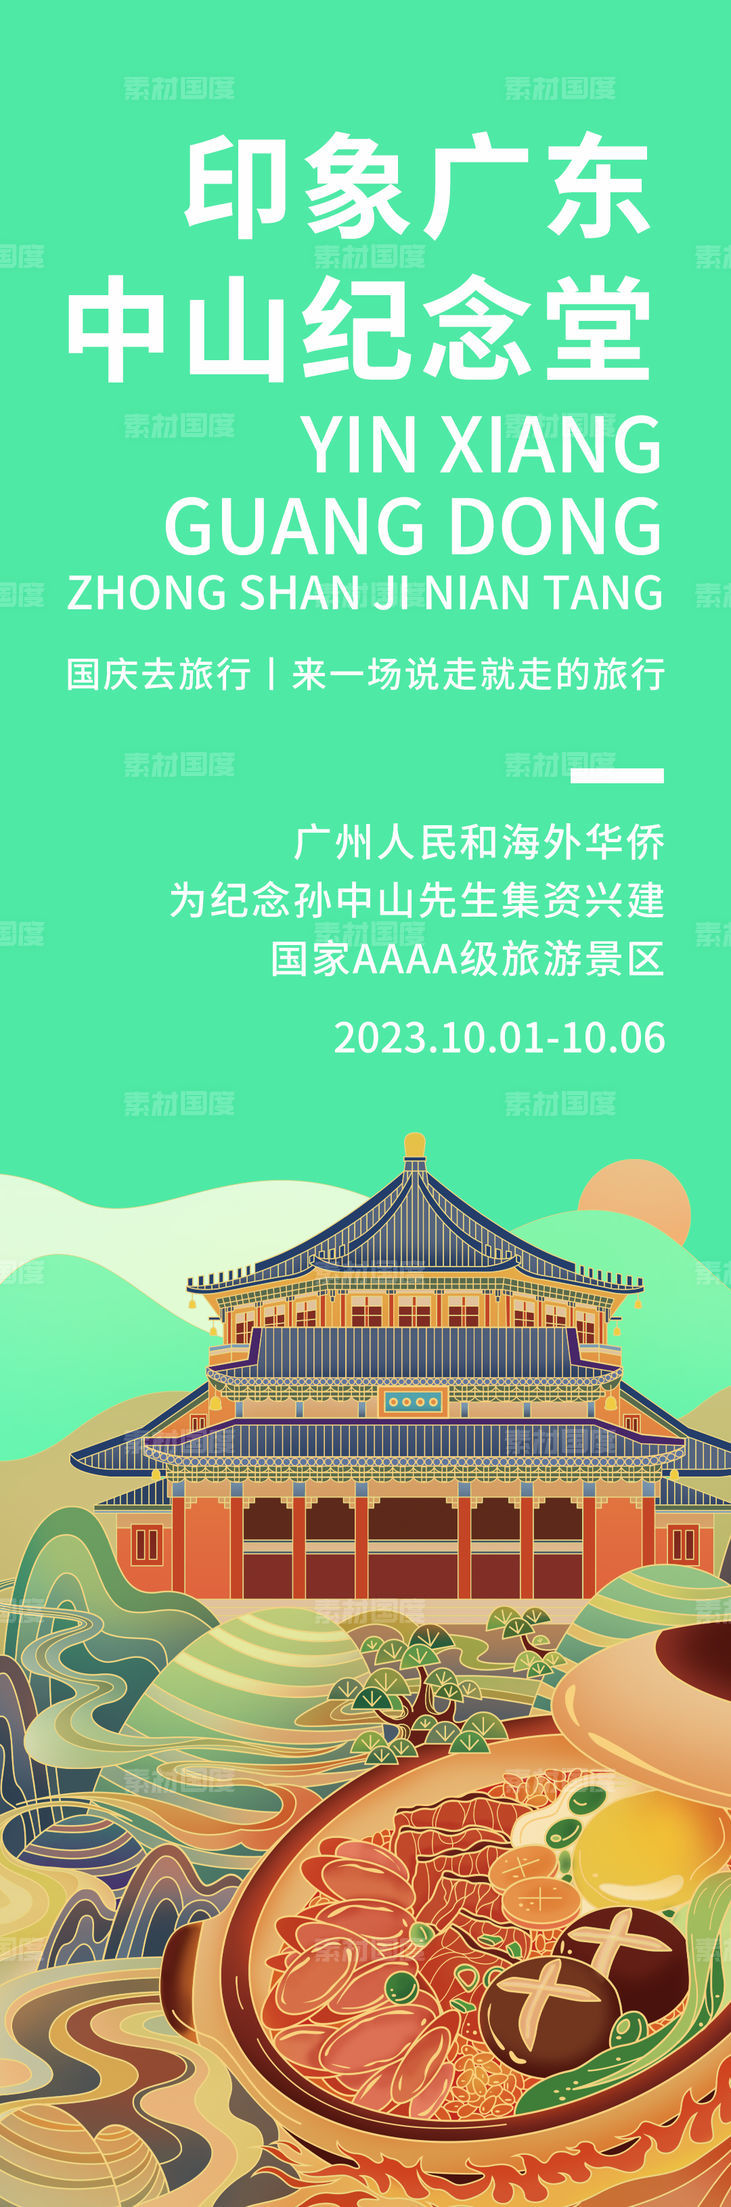 印象广东中山纪念堂海报